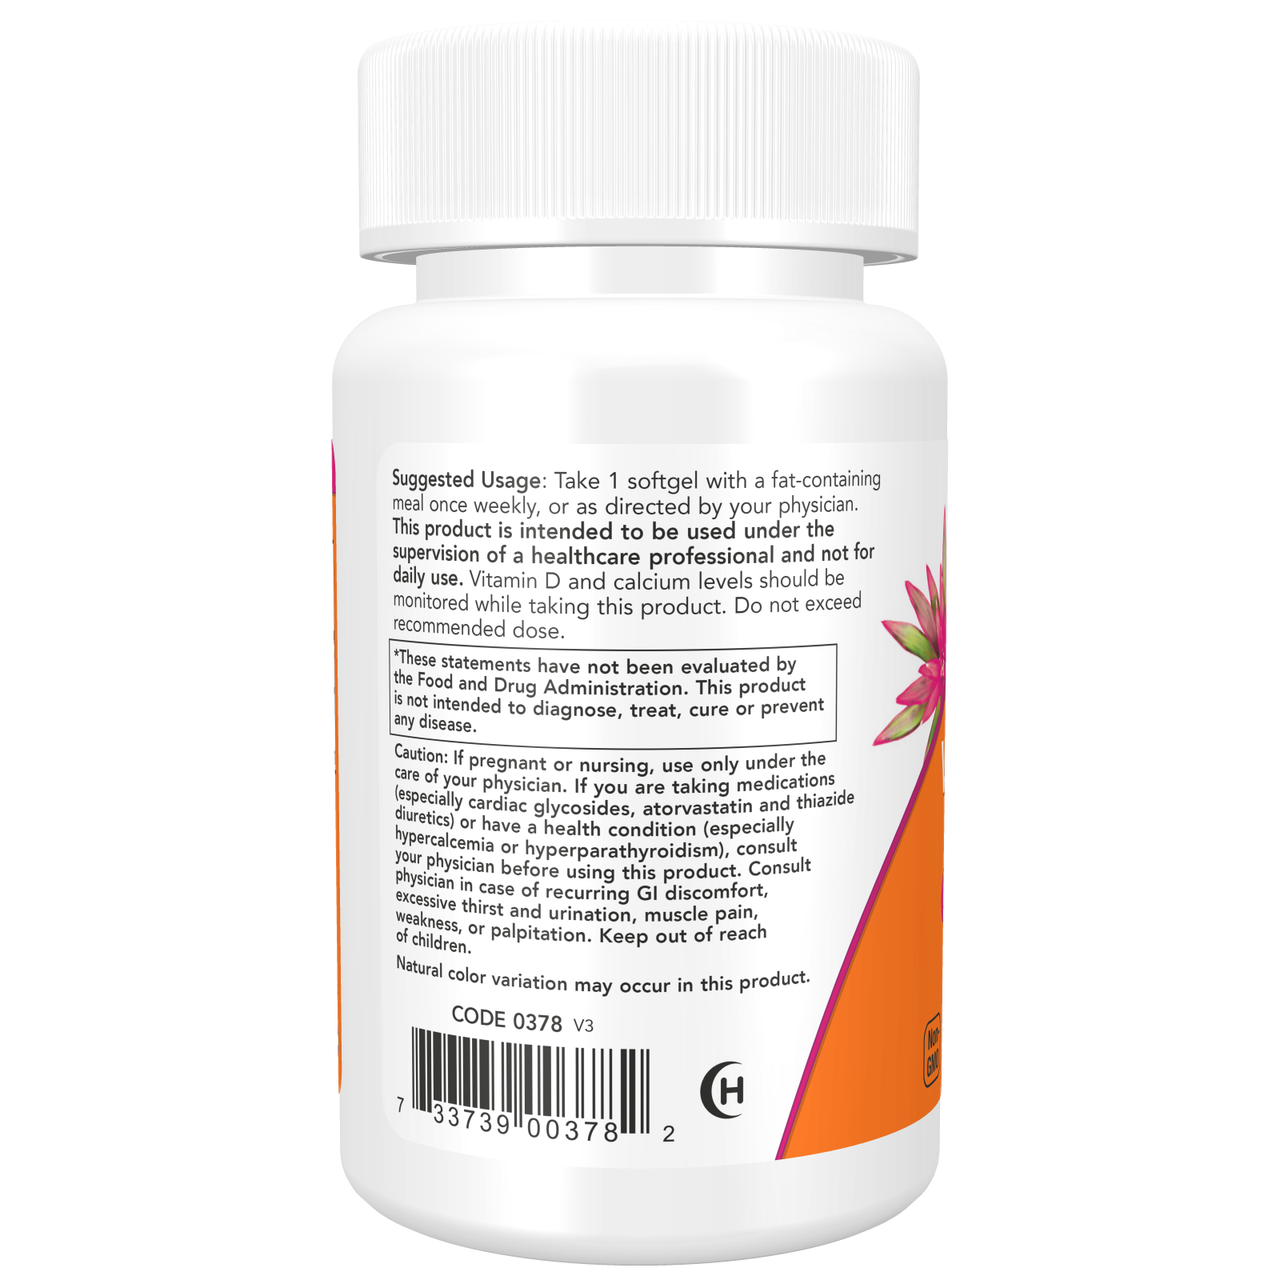 Vitamin D-3 50000 IU Softgels - Nowfoods